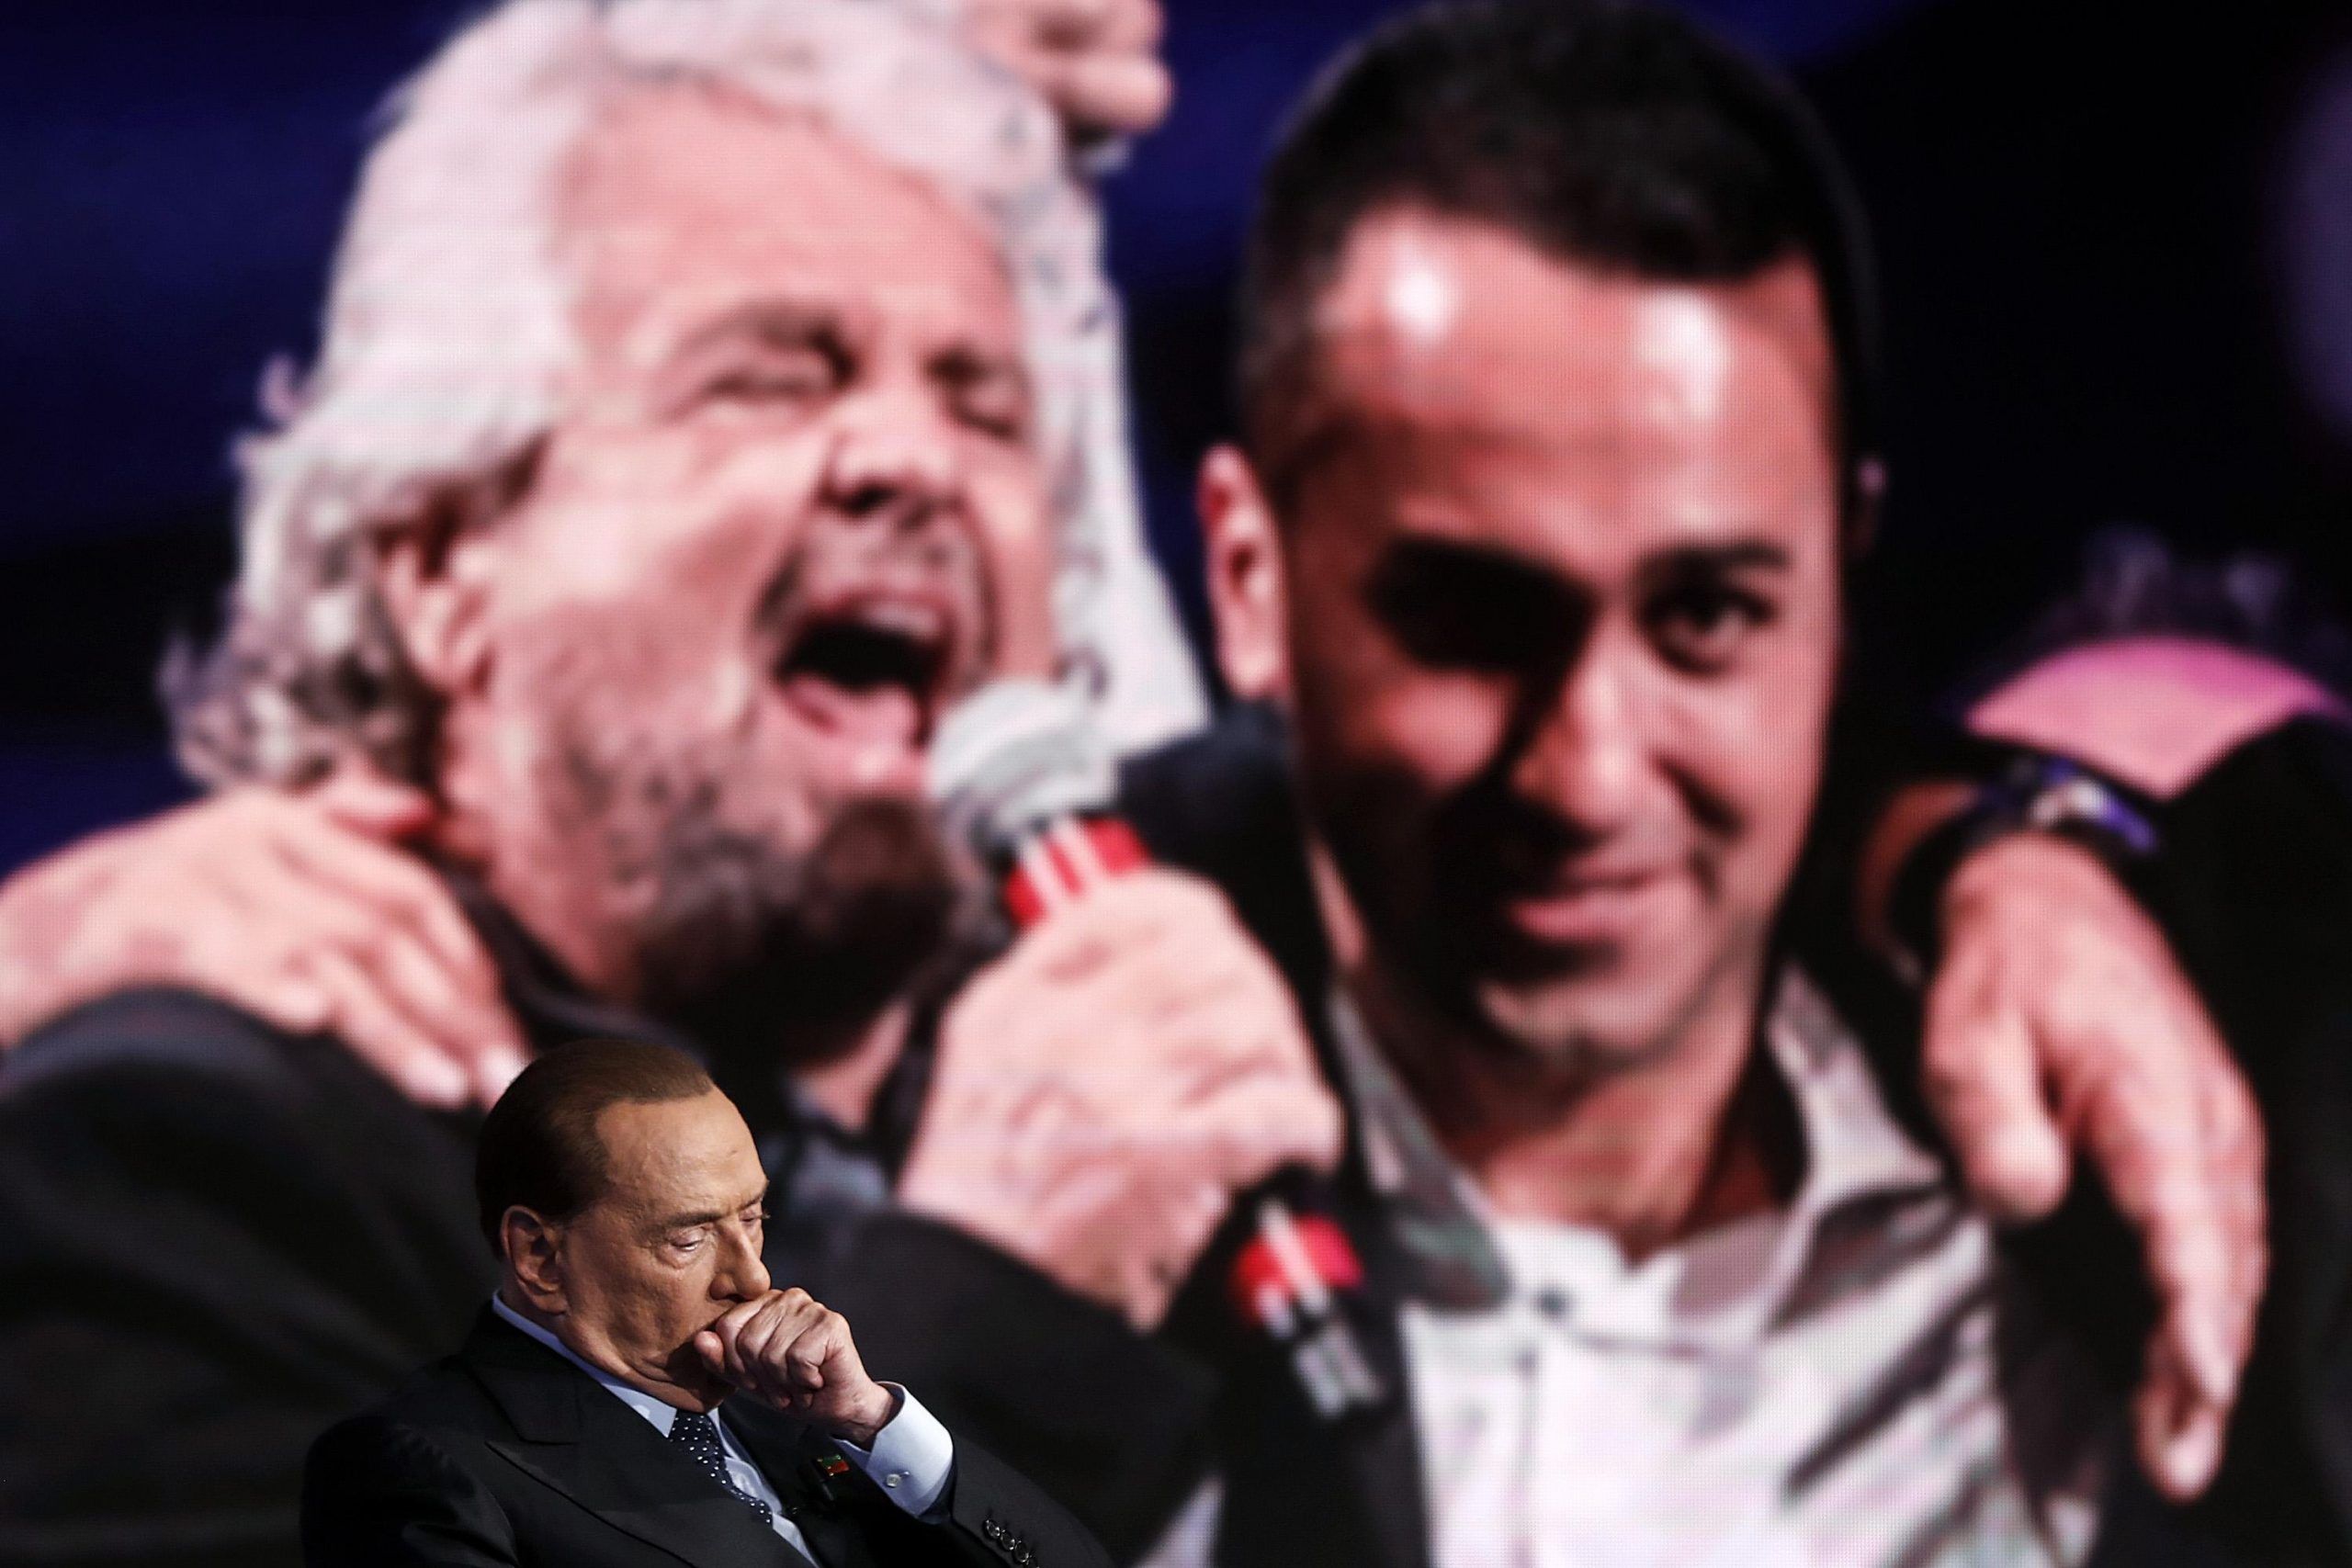 Silvio Berlusconi durante la trasmissione televisiva Porta a Porta in onda su Rai Uno, sul monitor Beppe Grillo e Luigi Di Maio